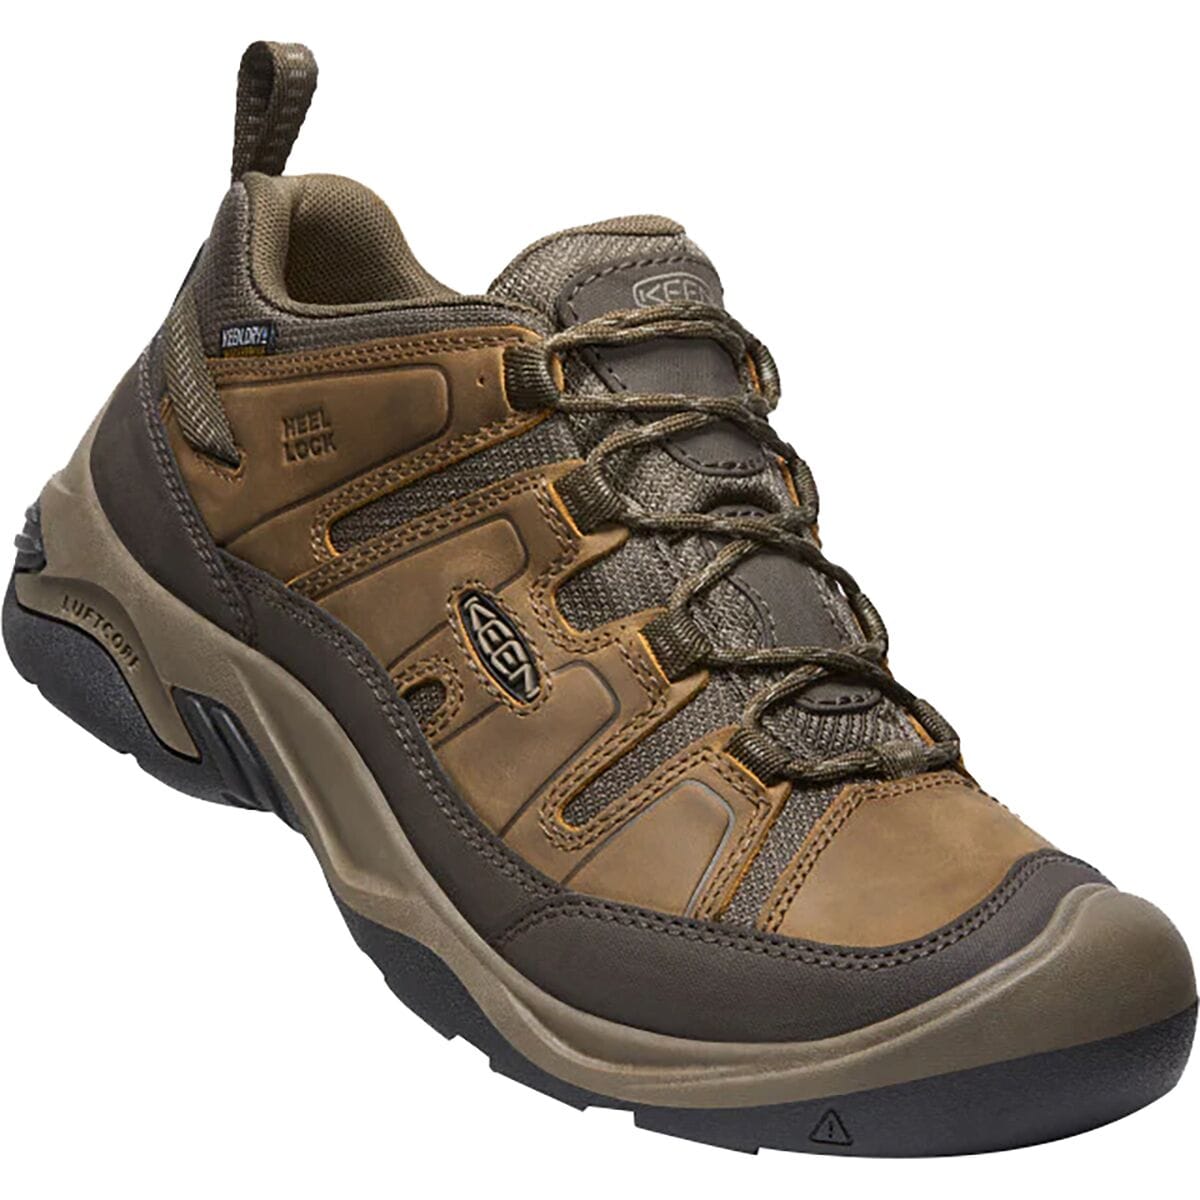 KEEN Circadia Waterproof Hiking Shoe - Men's - Footwear